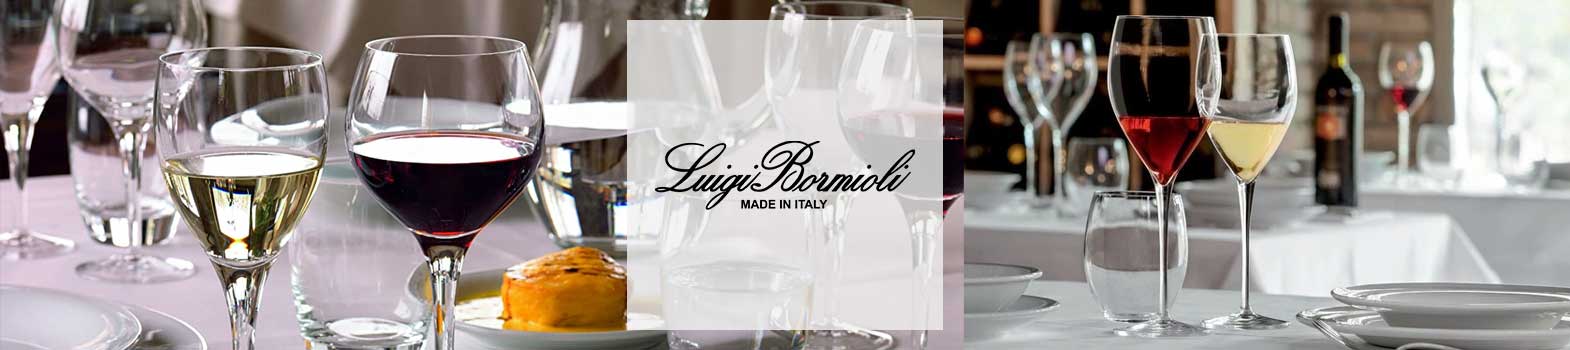 Luigi Bormioli Drinkware, Barware & More